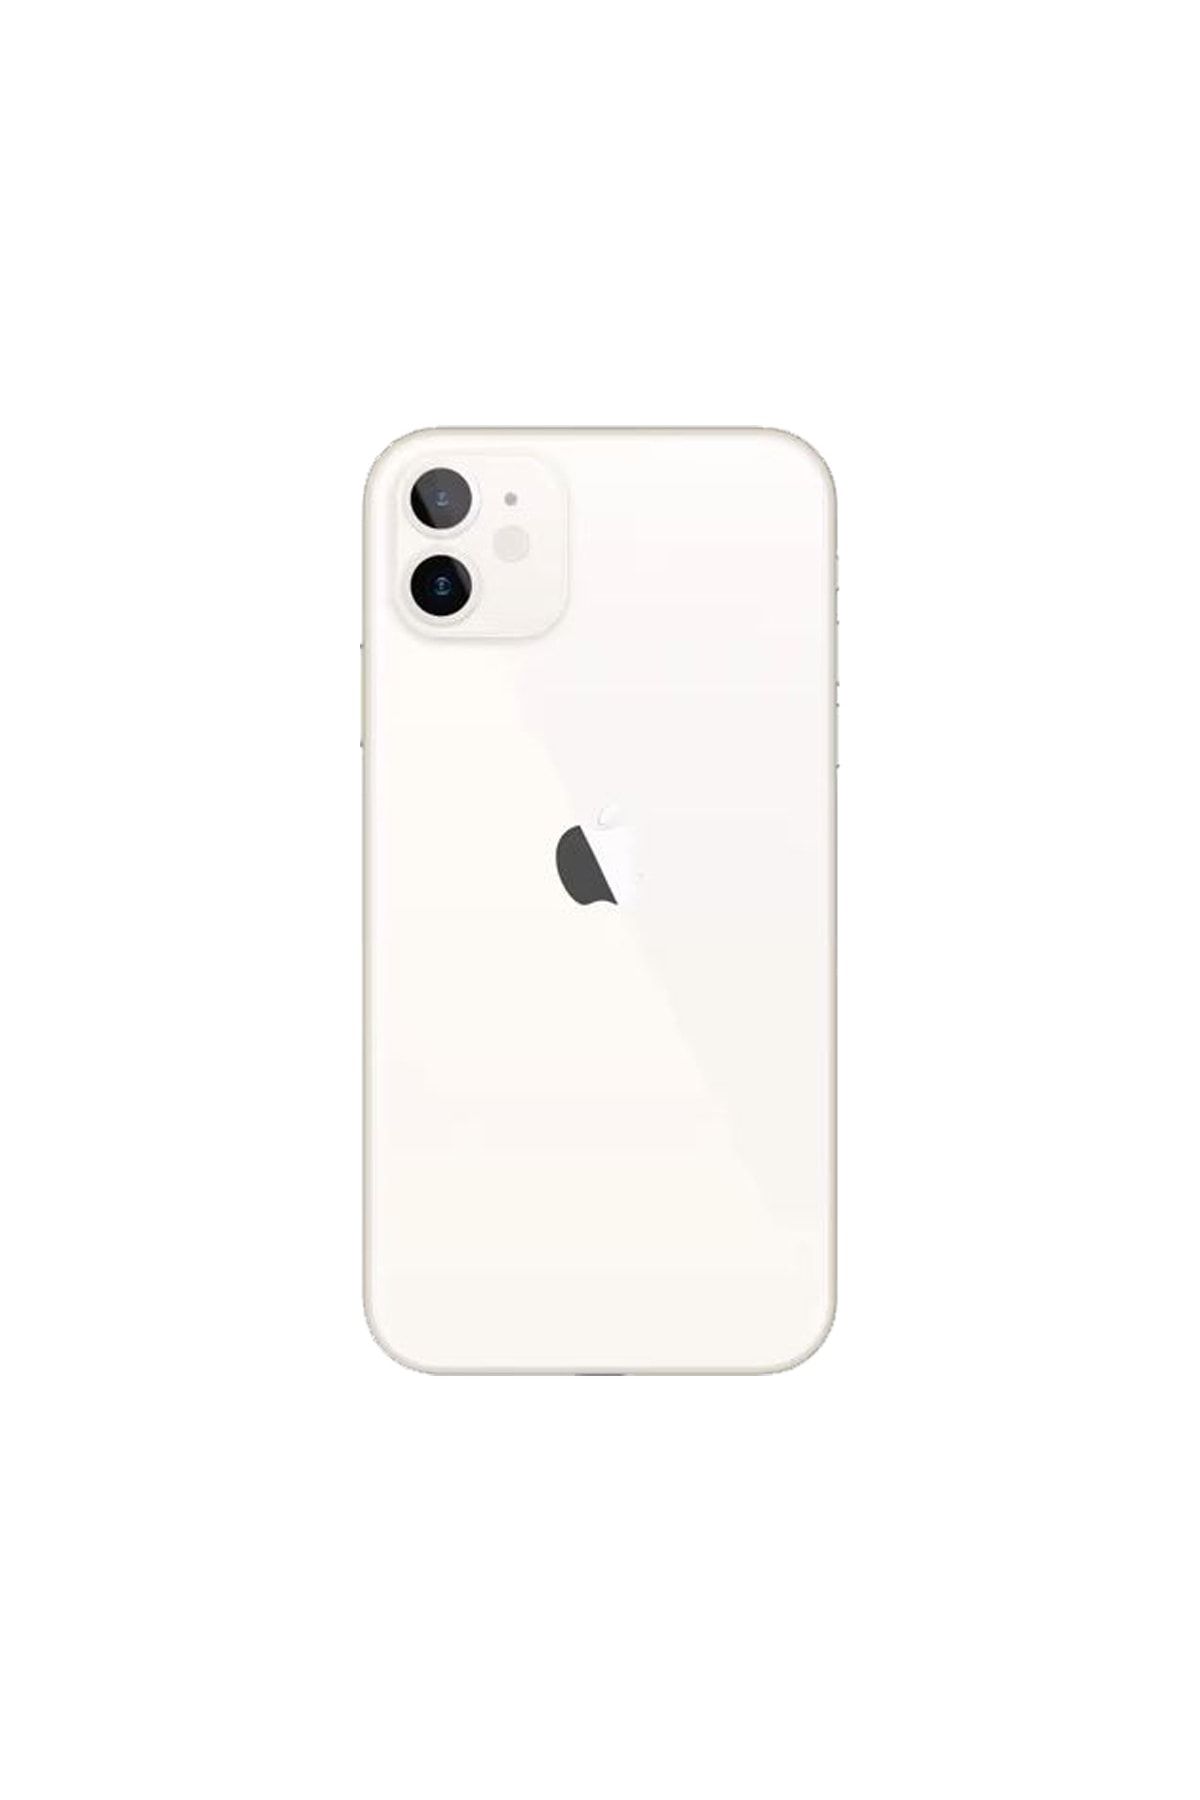 Apple Yenilenmiş iPhone 11 64 GB Beyaz Cep Telefonu (12 Ay Garantili) - C Kalite